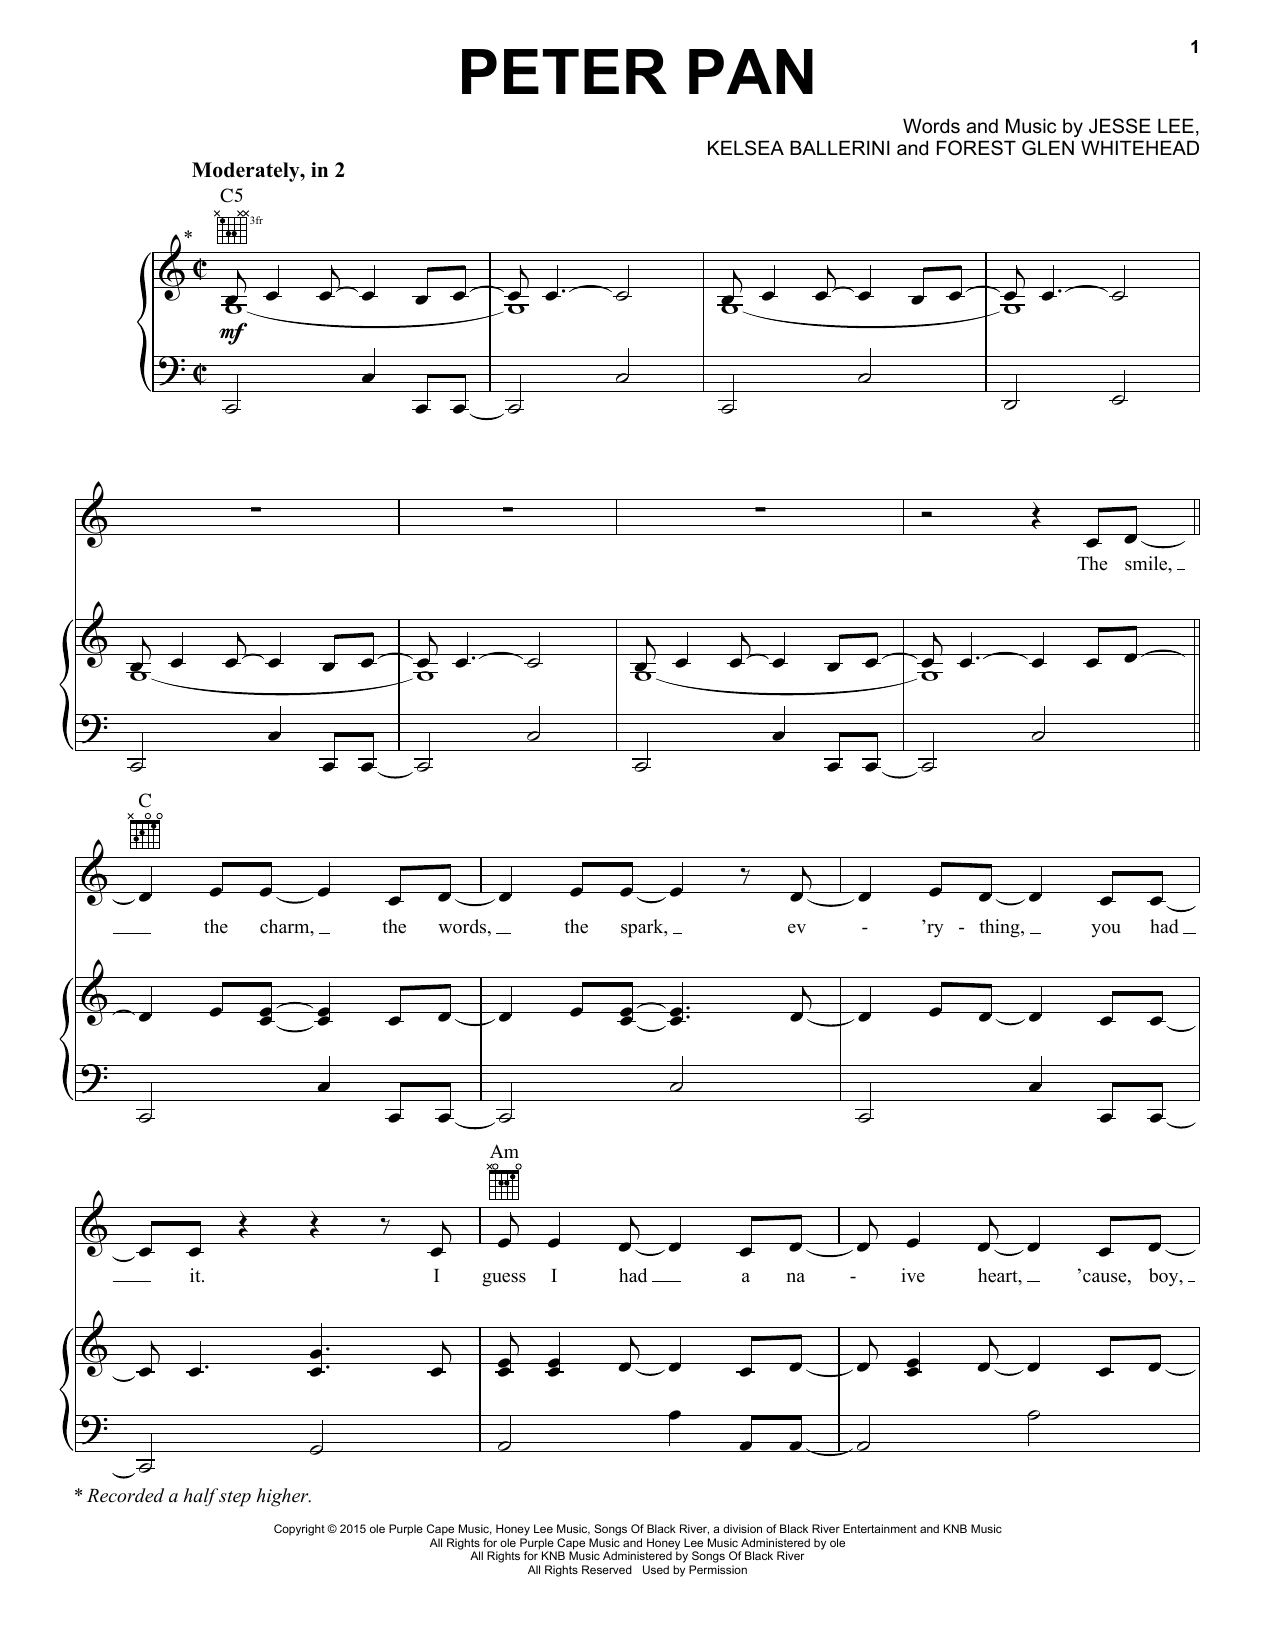 Kelsea Ballerini "Peter Pan" Sheet Music Notes Download Printable PDF